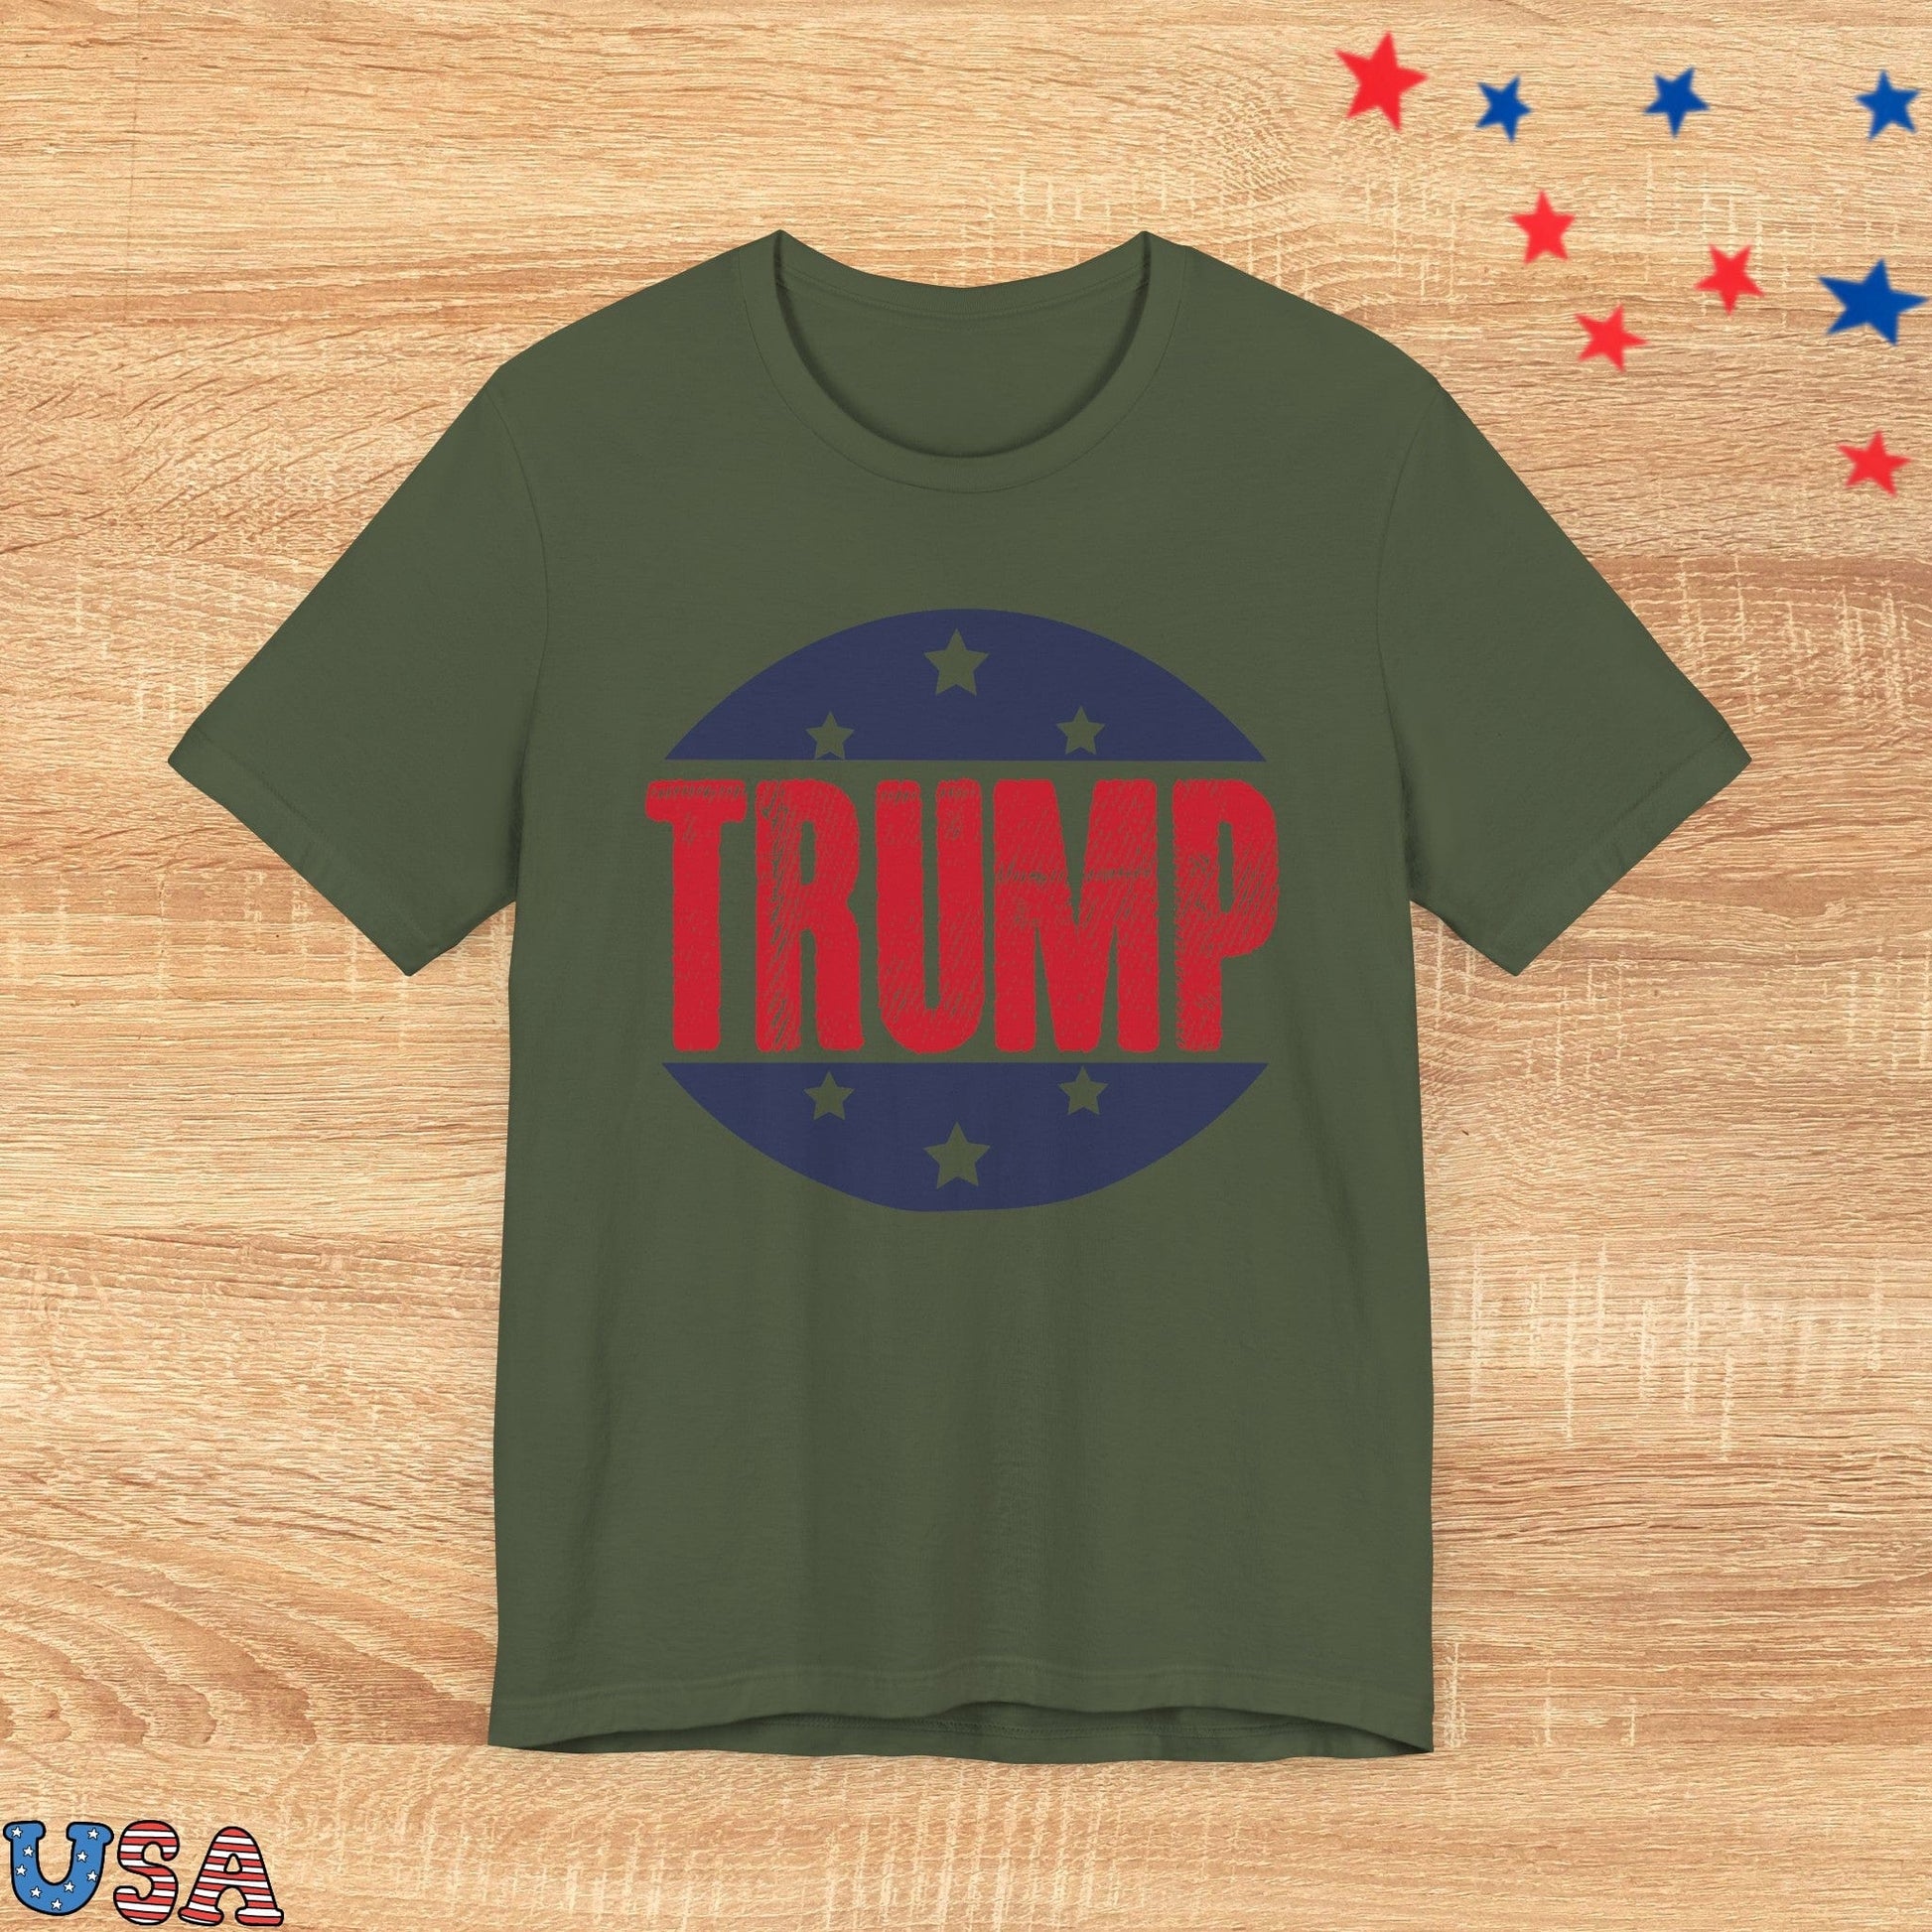 patriotic stars T-Shirt Military Green / XS Trump Stars